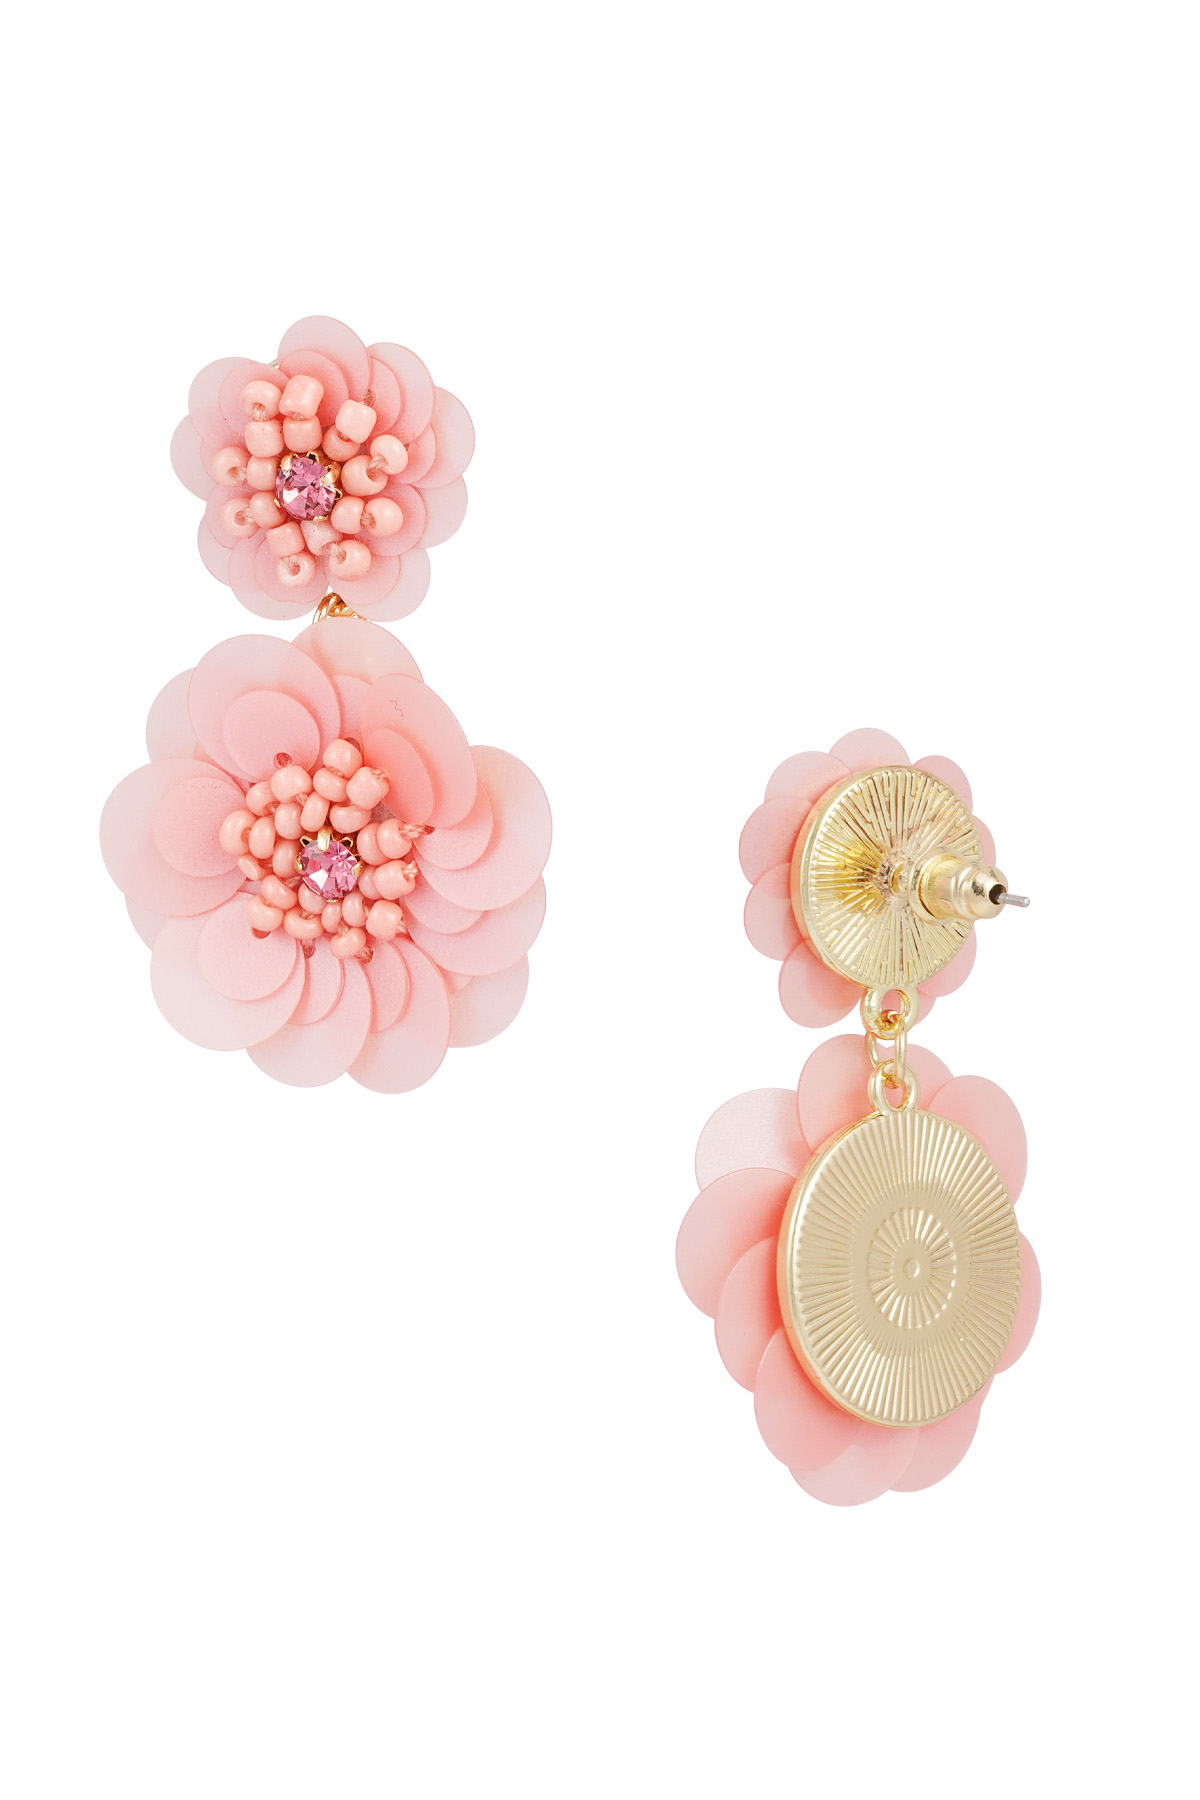 Boucles d'oreilles saison florale - rose